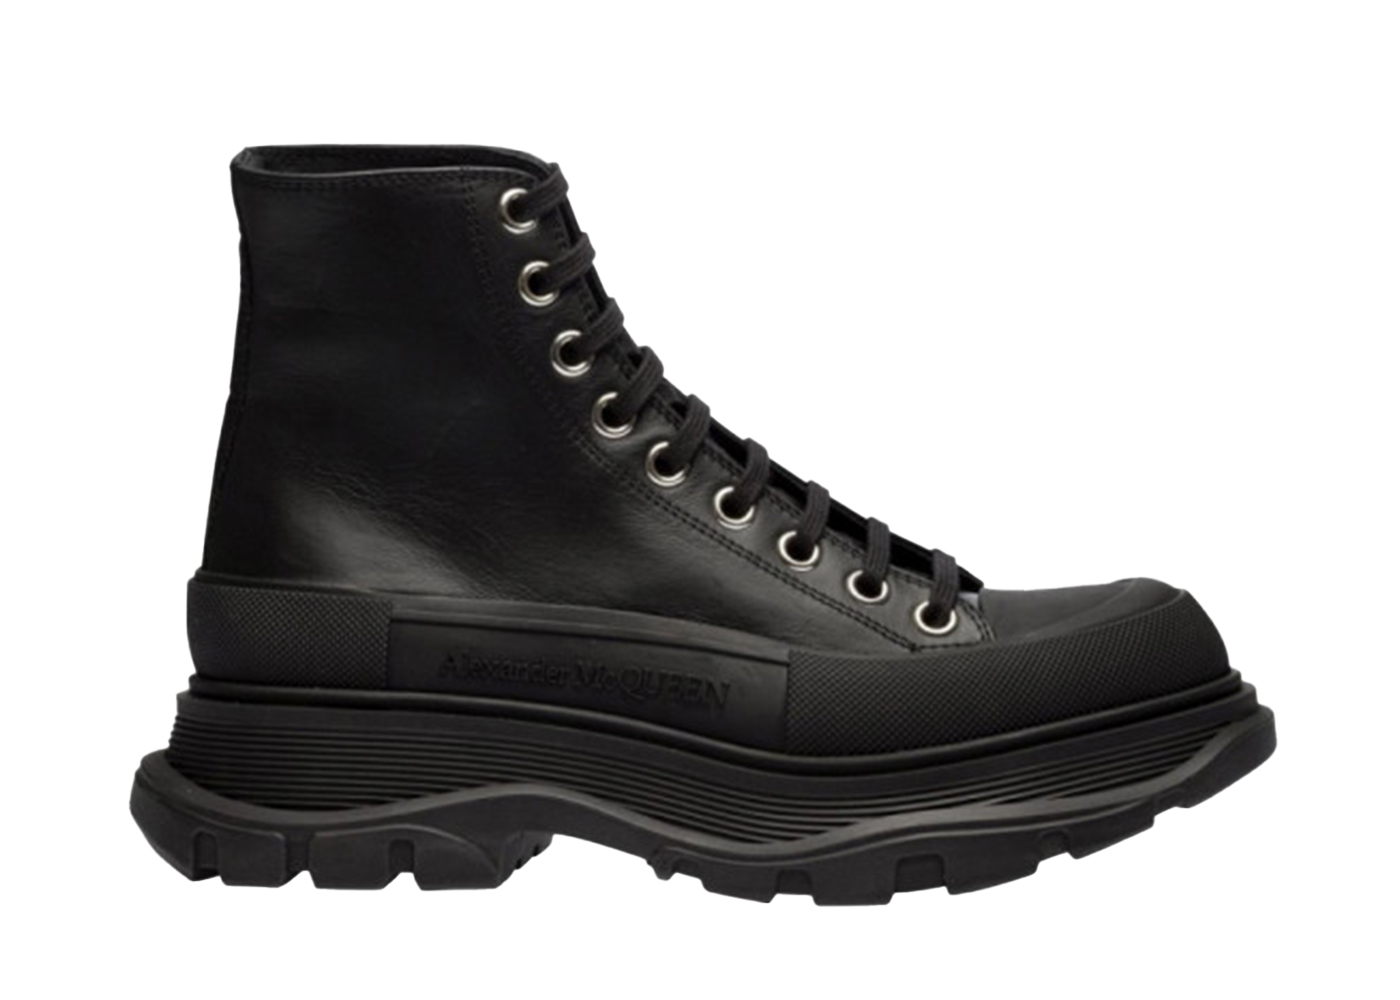 Alexander McQueen Tread Slick Boot Leather Black Black (Women's)